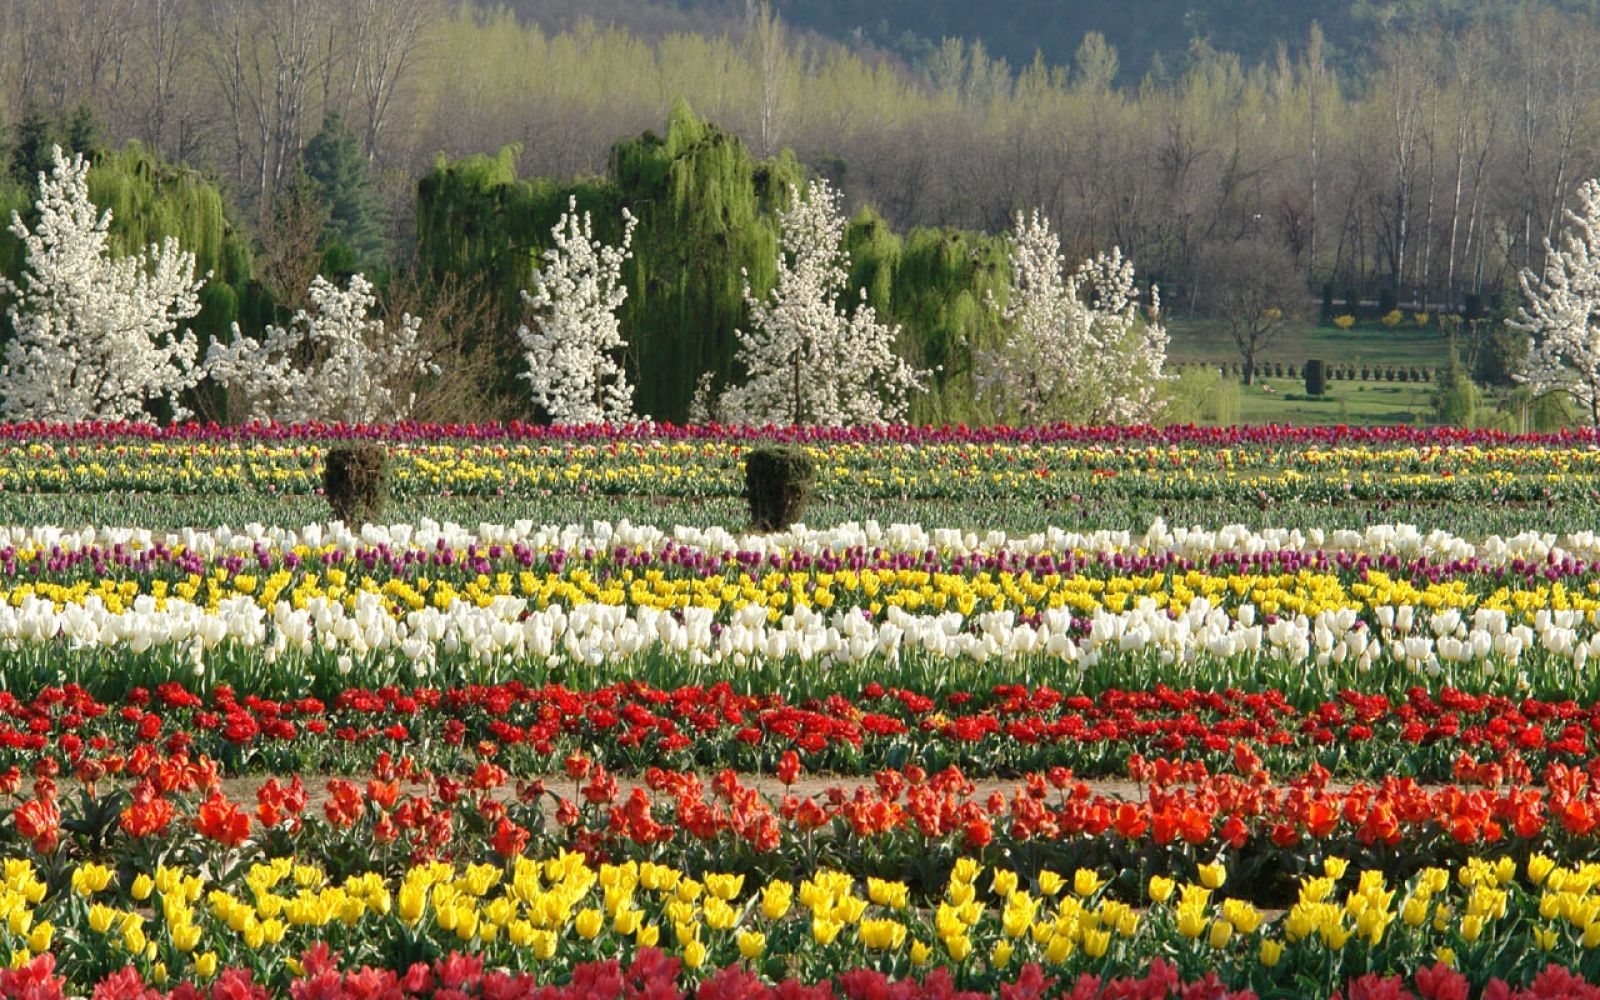 Indira Gandhi Memorial Tulip Garden in Holland